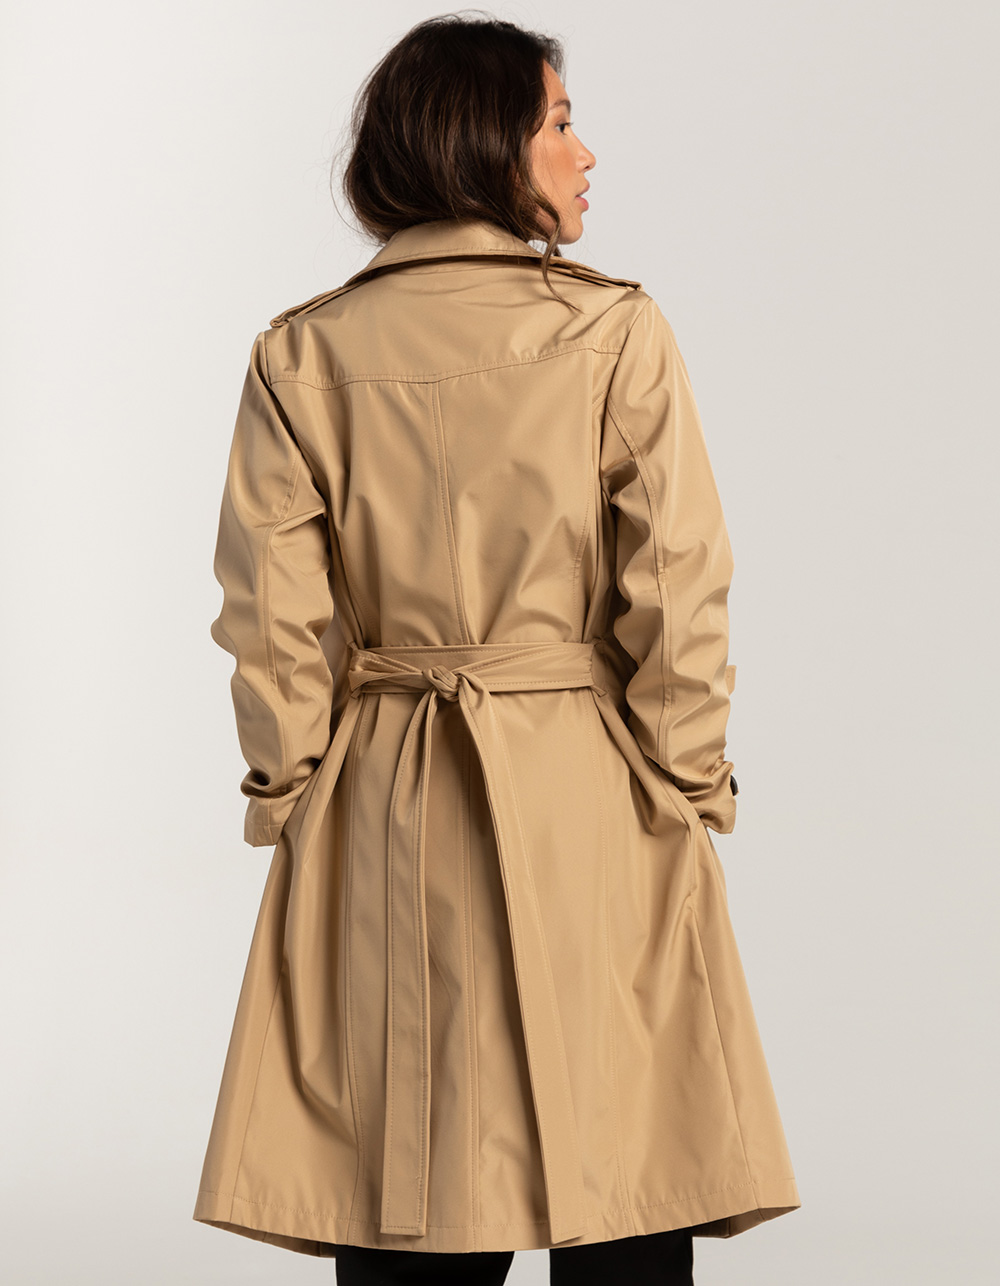  RICOCHO Women's Long Trench Coat Lightweight Long